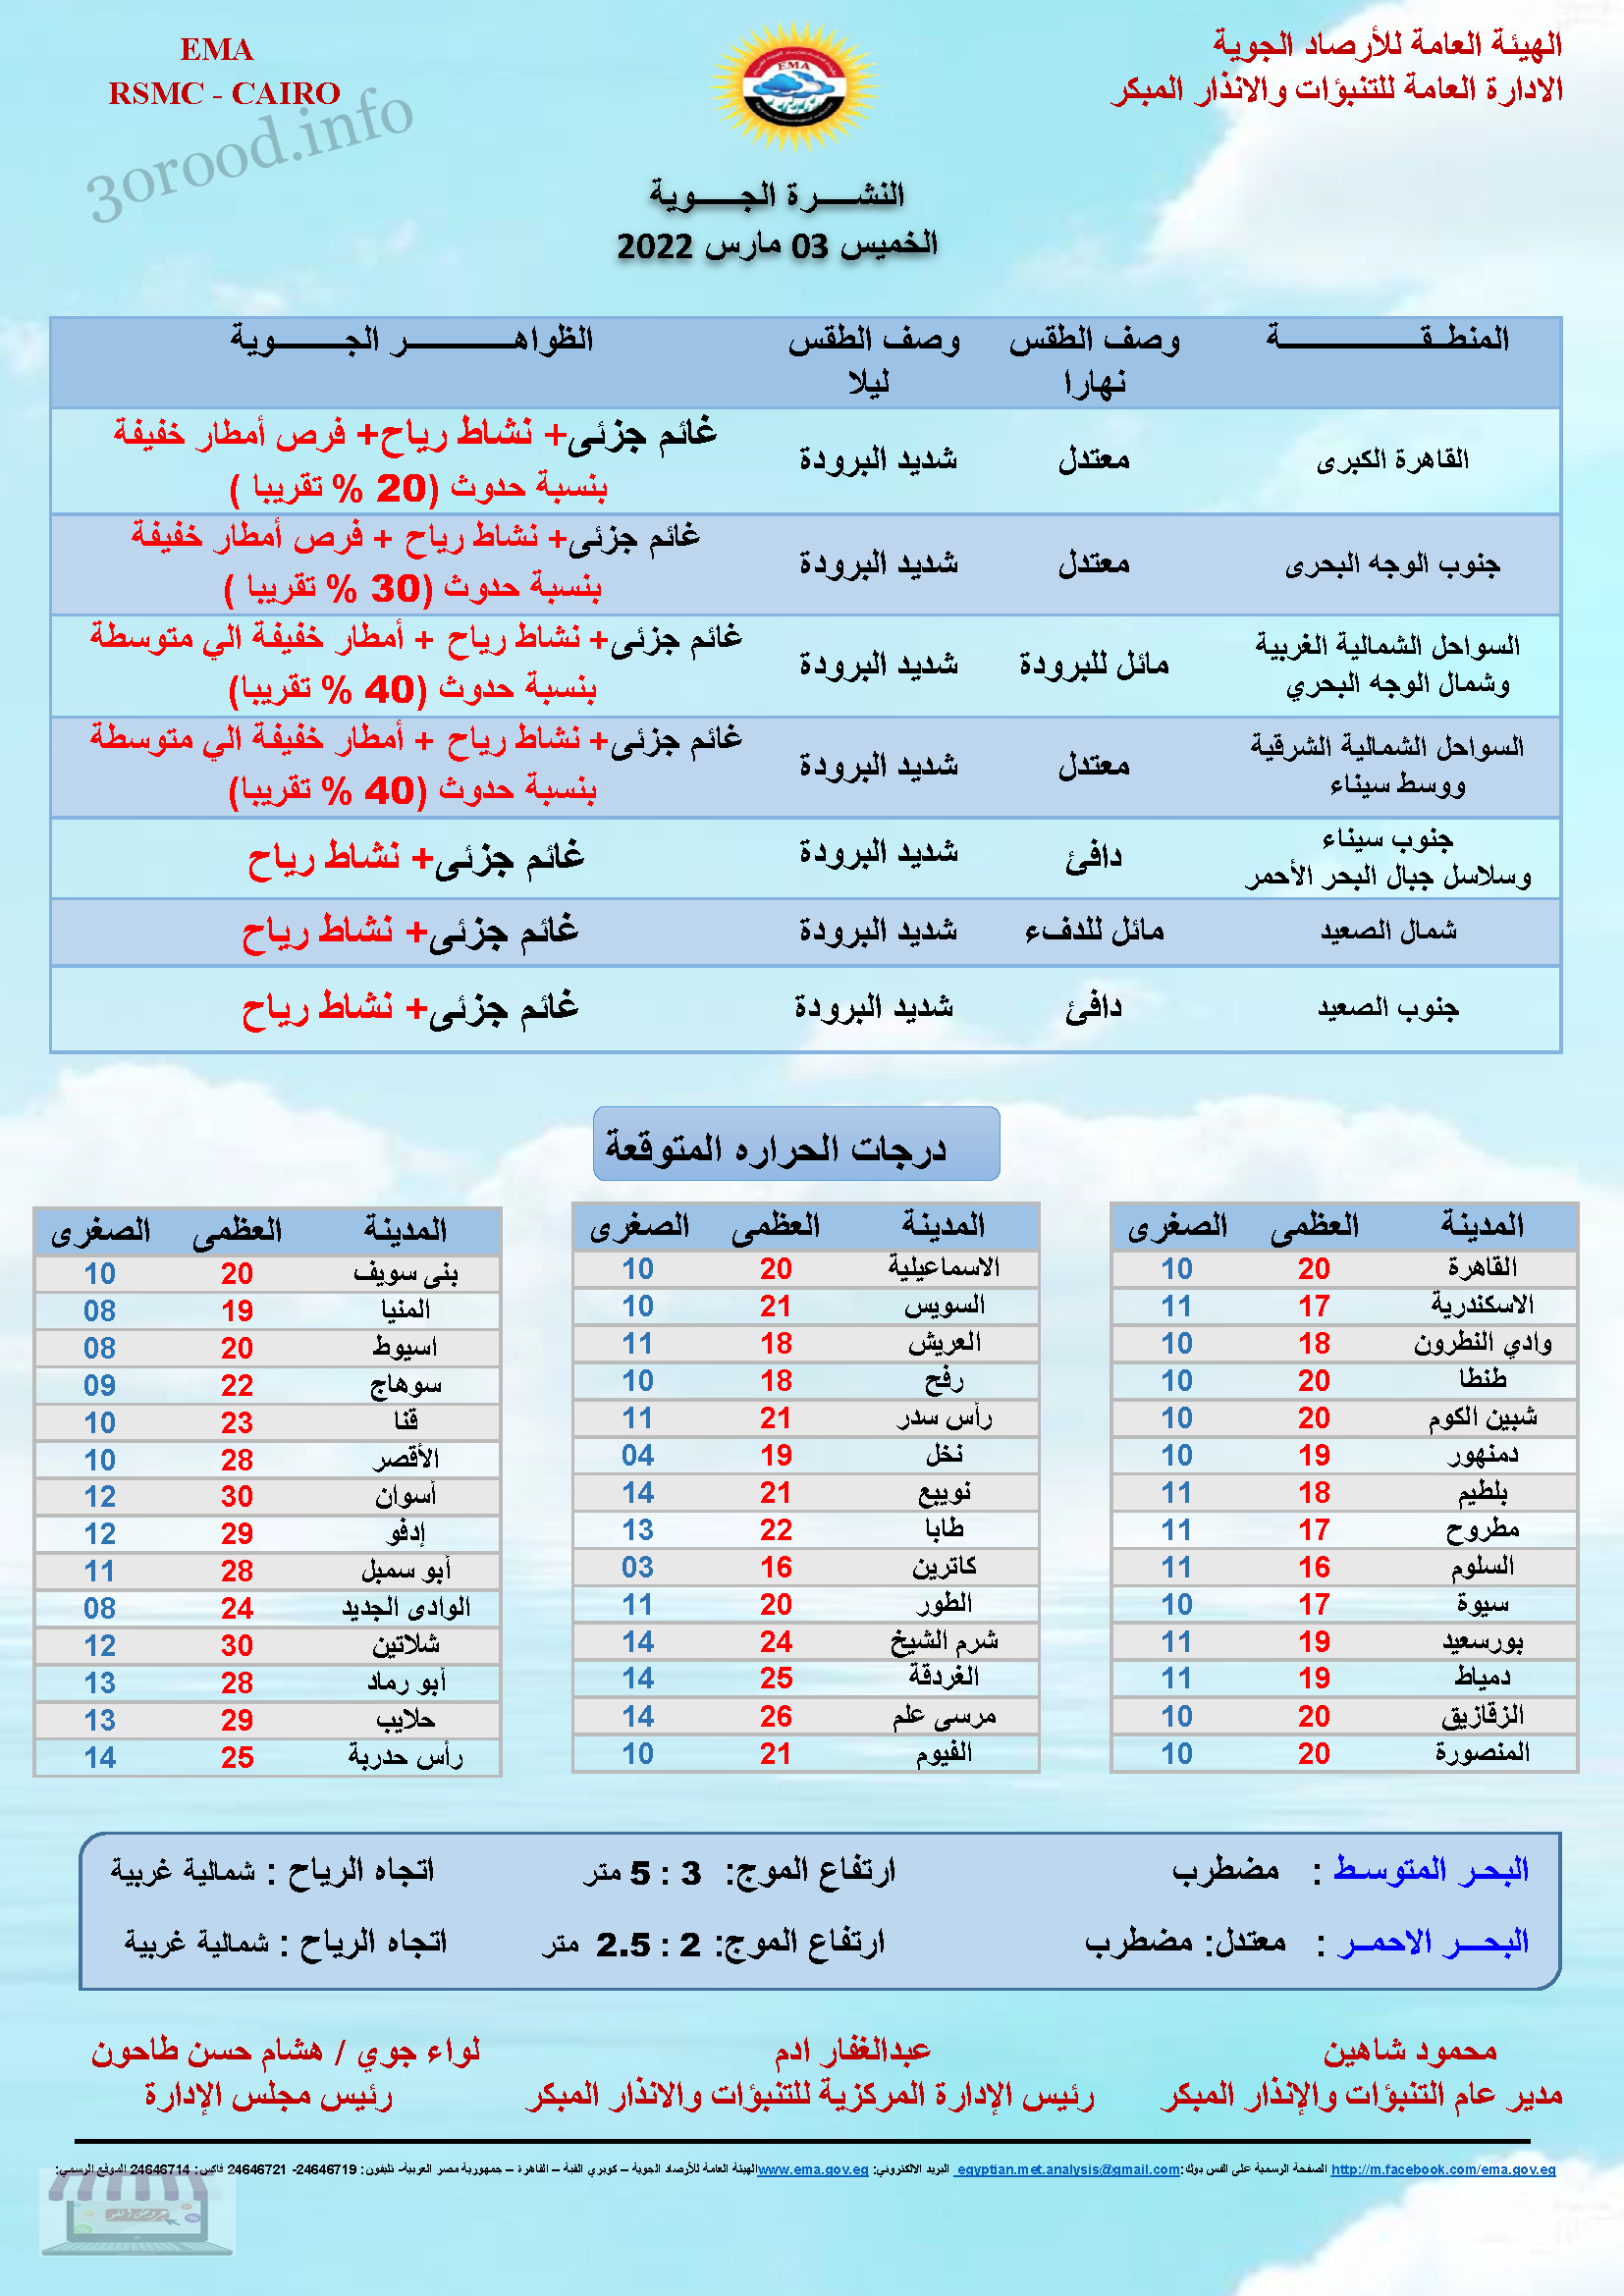 اخبار الطقس فى مصر الخميس 3 مارس 2022 النشرة الجوية فى مصر